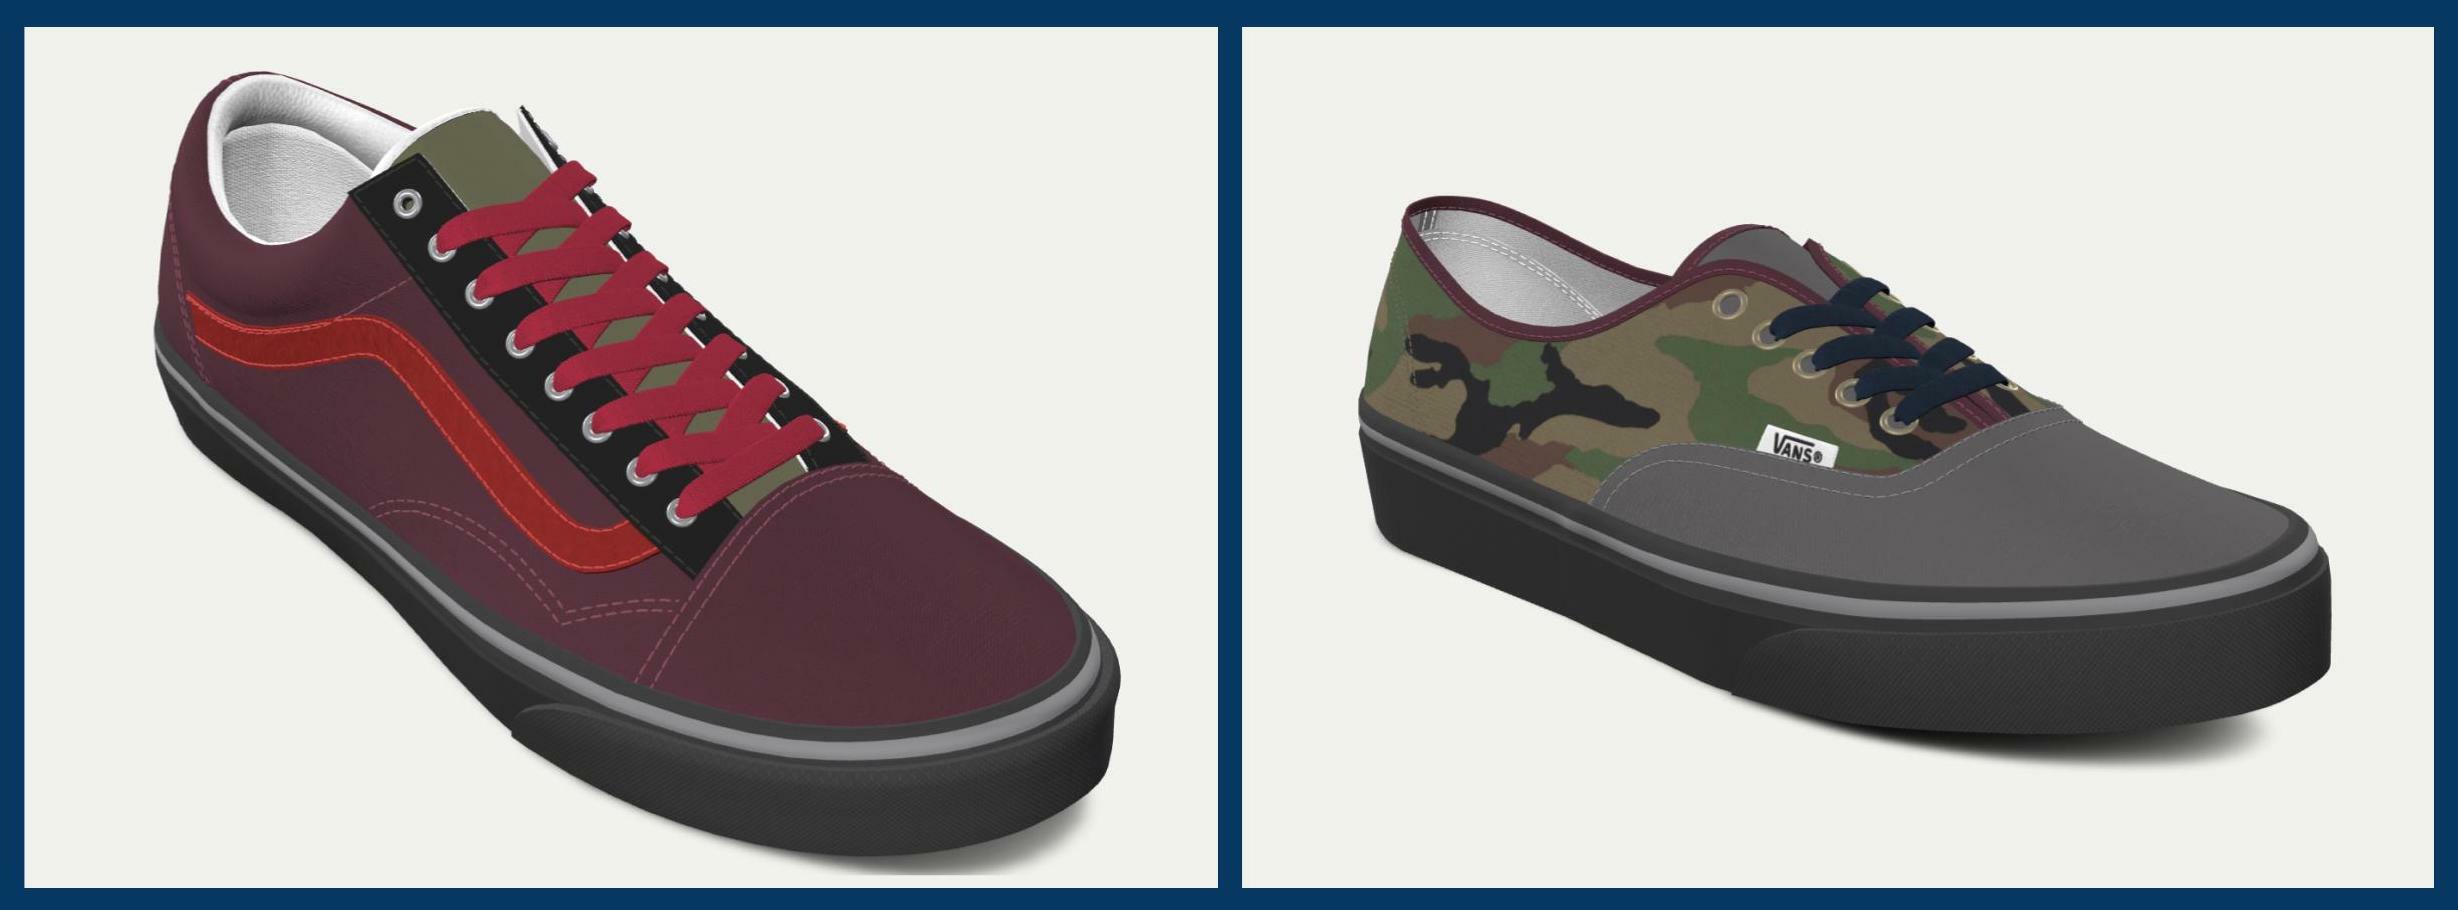 Dos zapatillas diseñadas con las herramientas de personalización de Vans.com